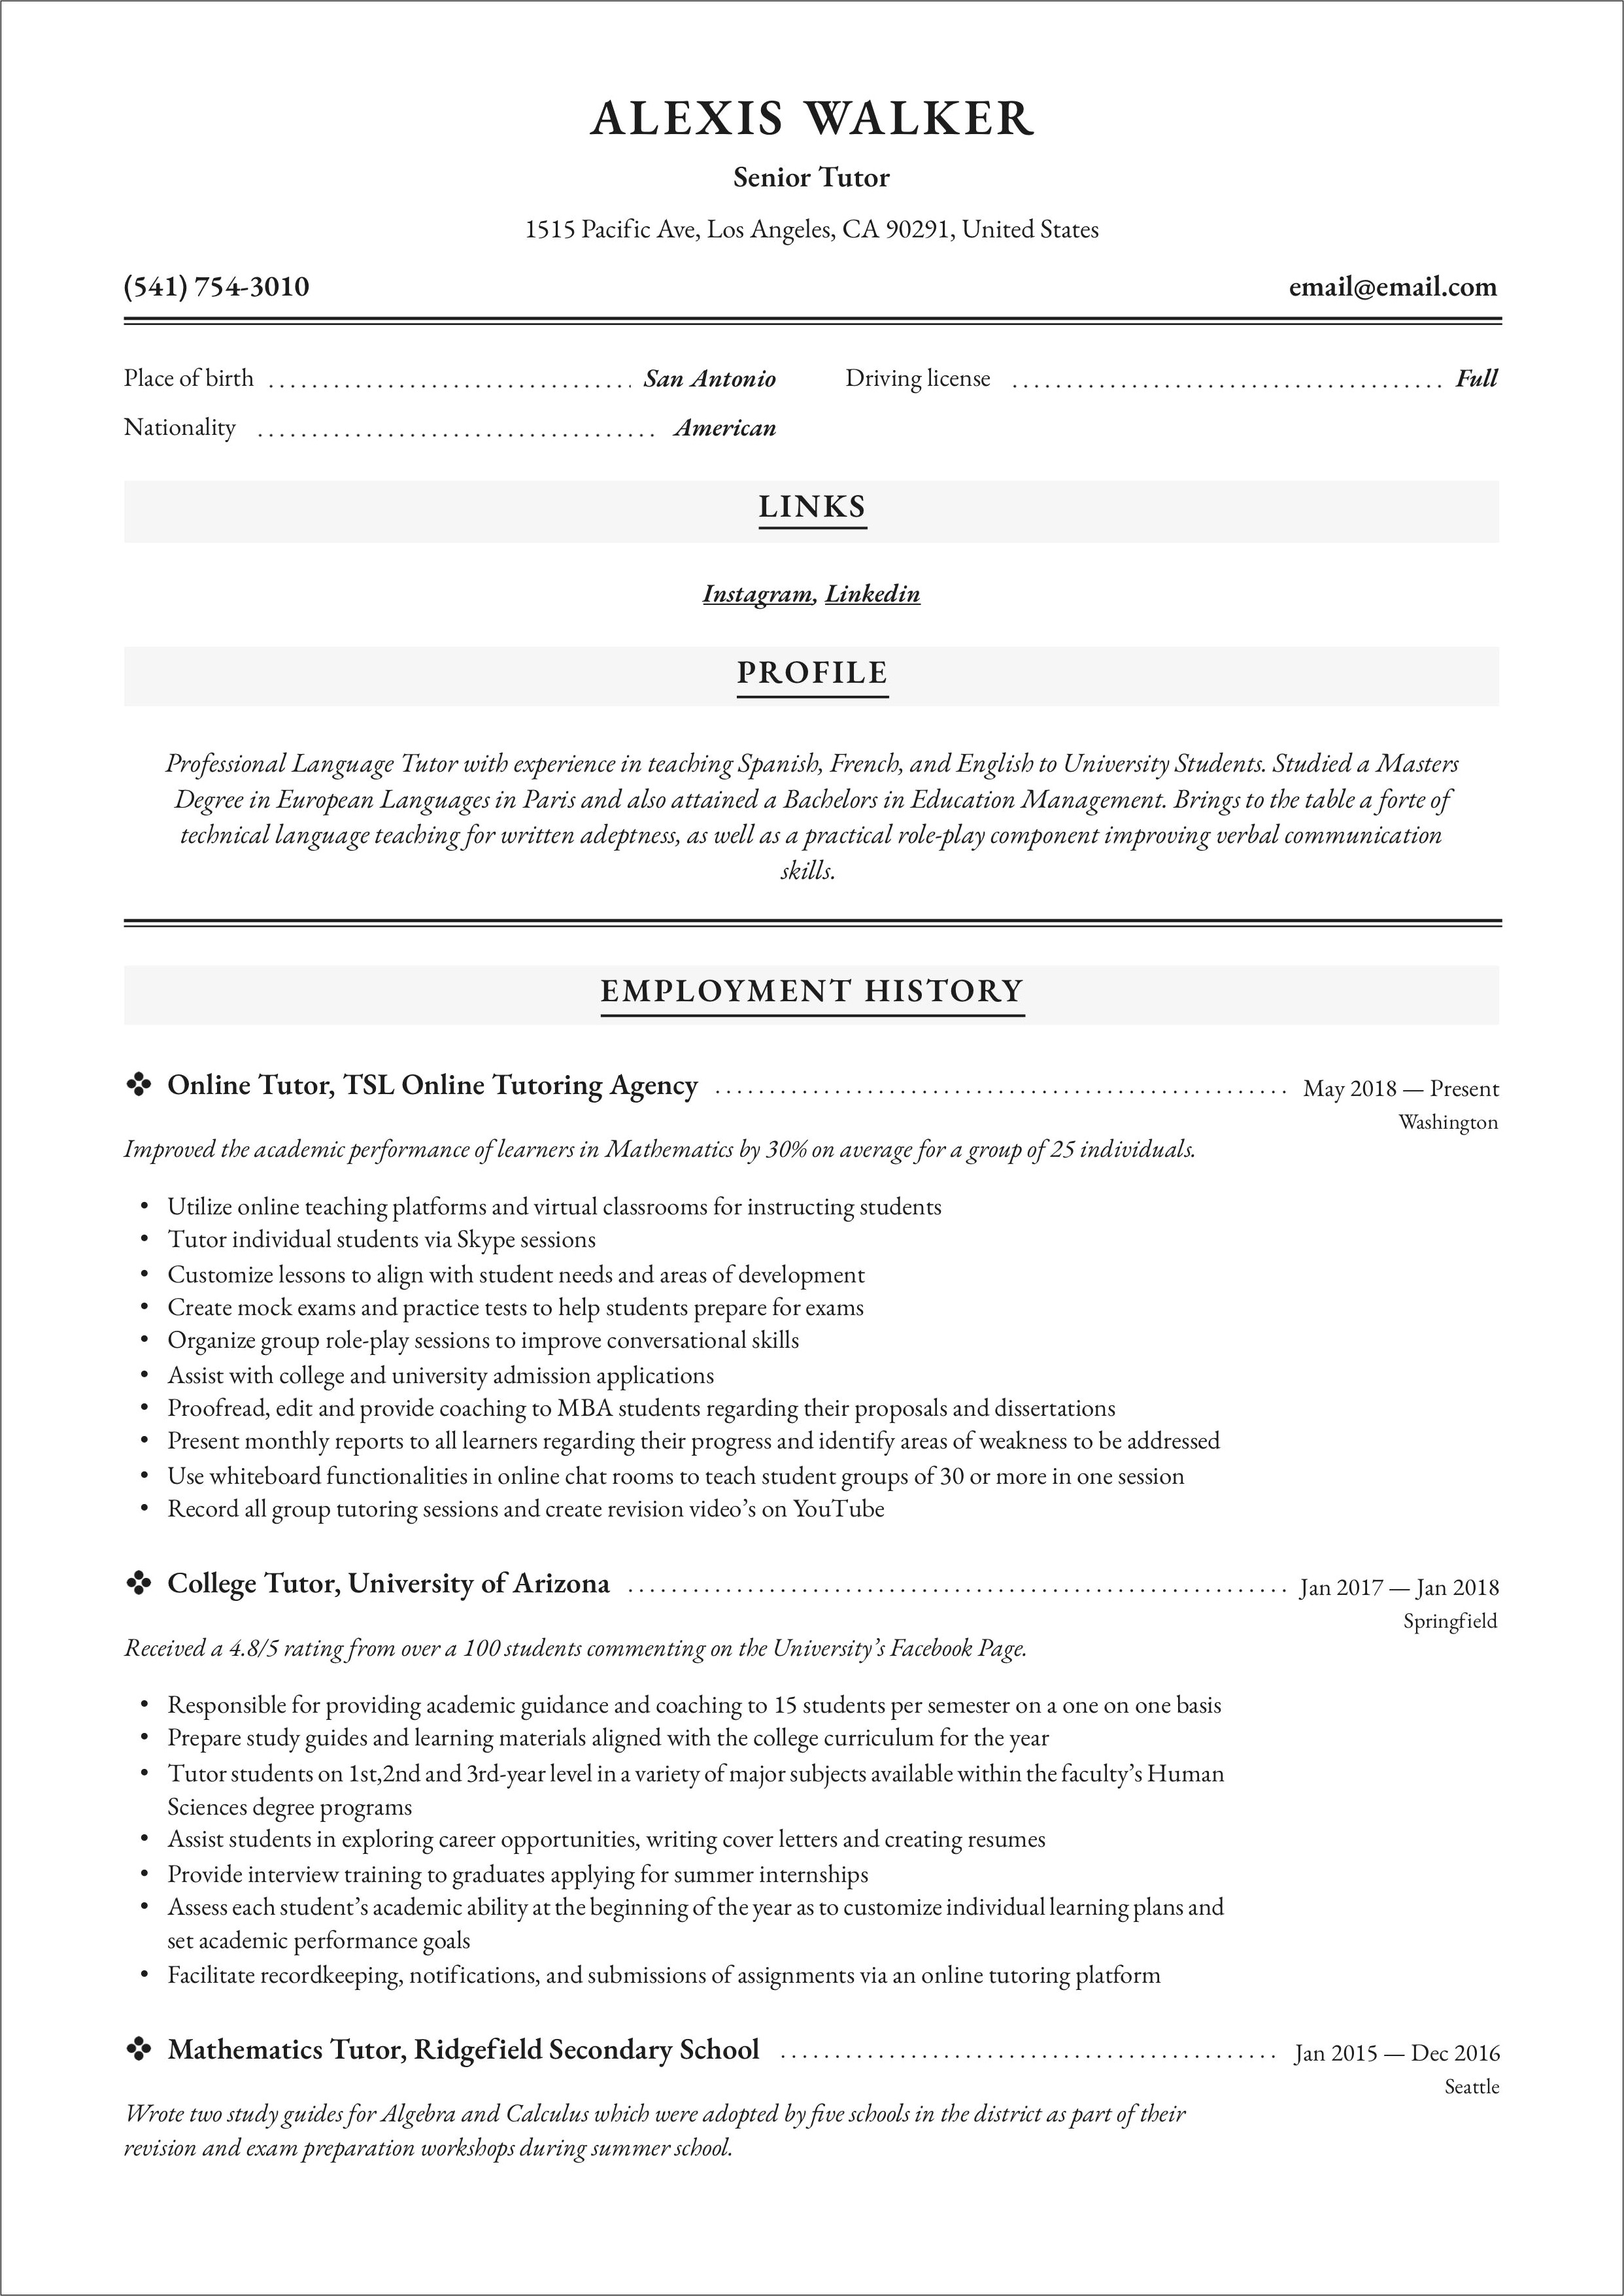 Resume Sample For A Tutor